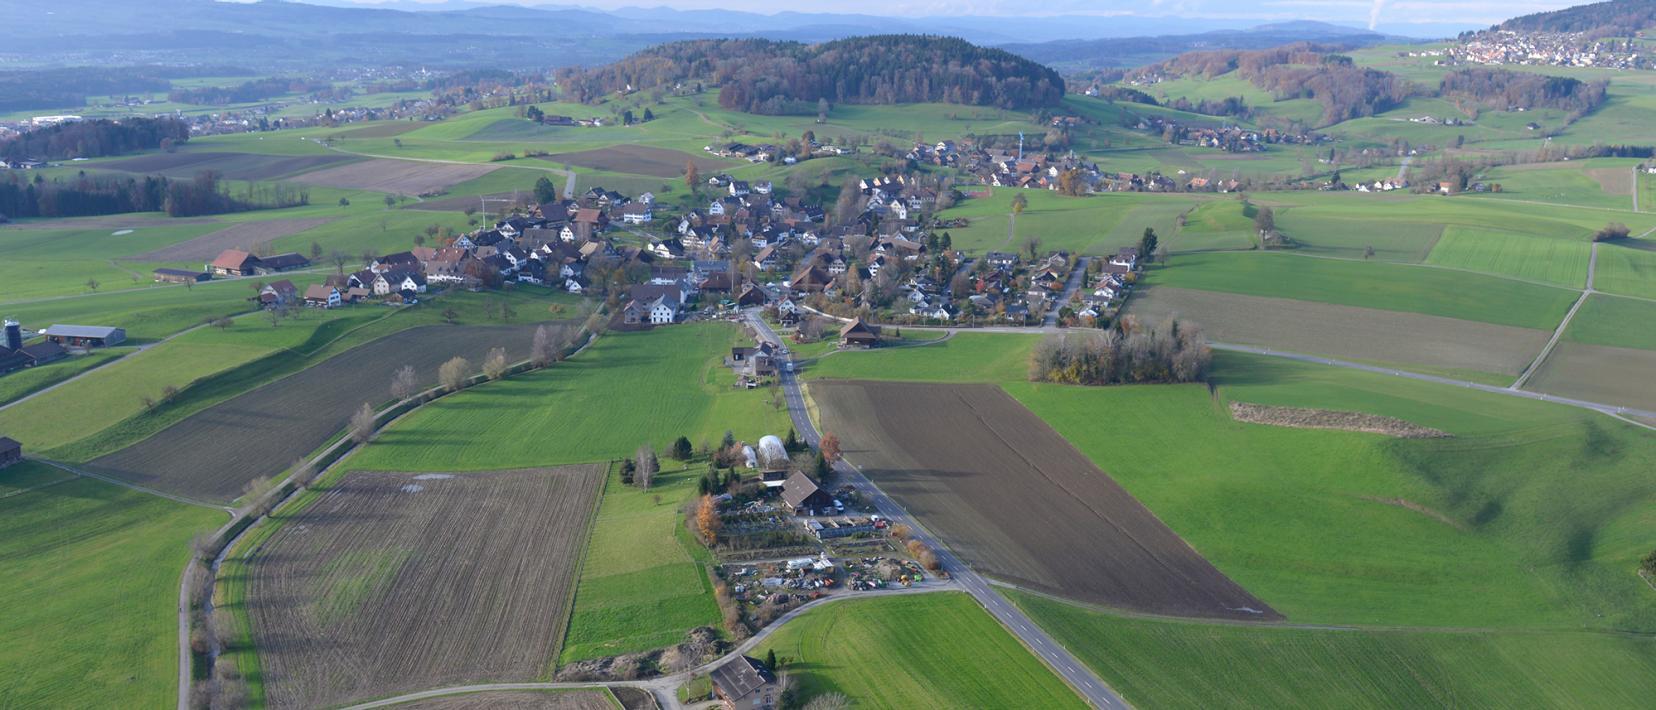 Luftaufnahme des Dorfes Rifferswil, das von Feldern und Äcker umgeben ist. Die stark kanalisierte Jonen verläuft durch das Dorf. 